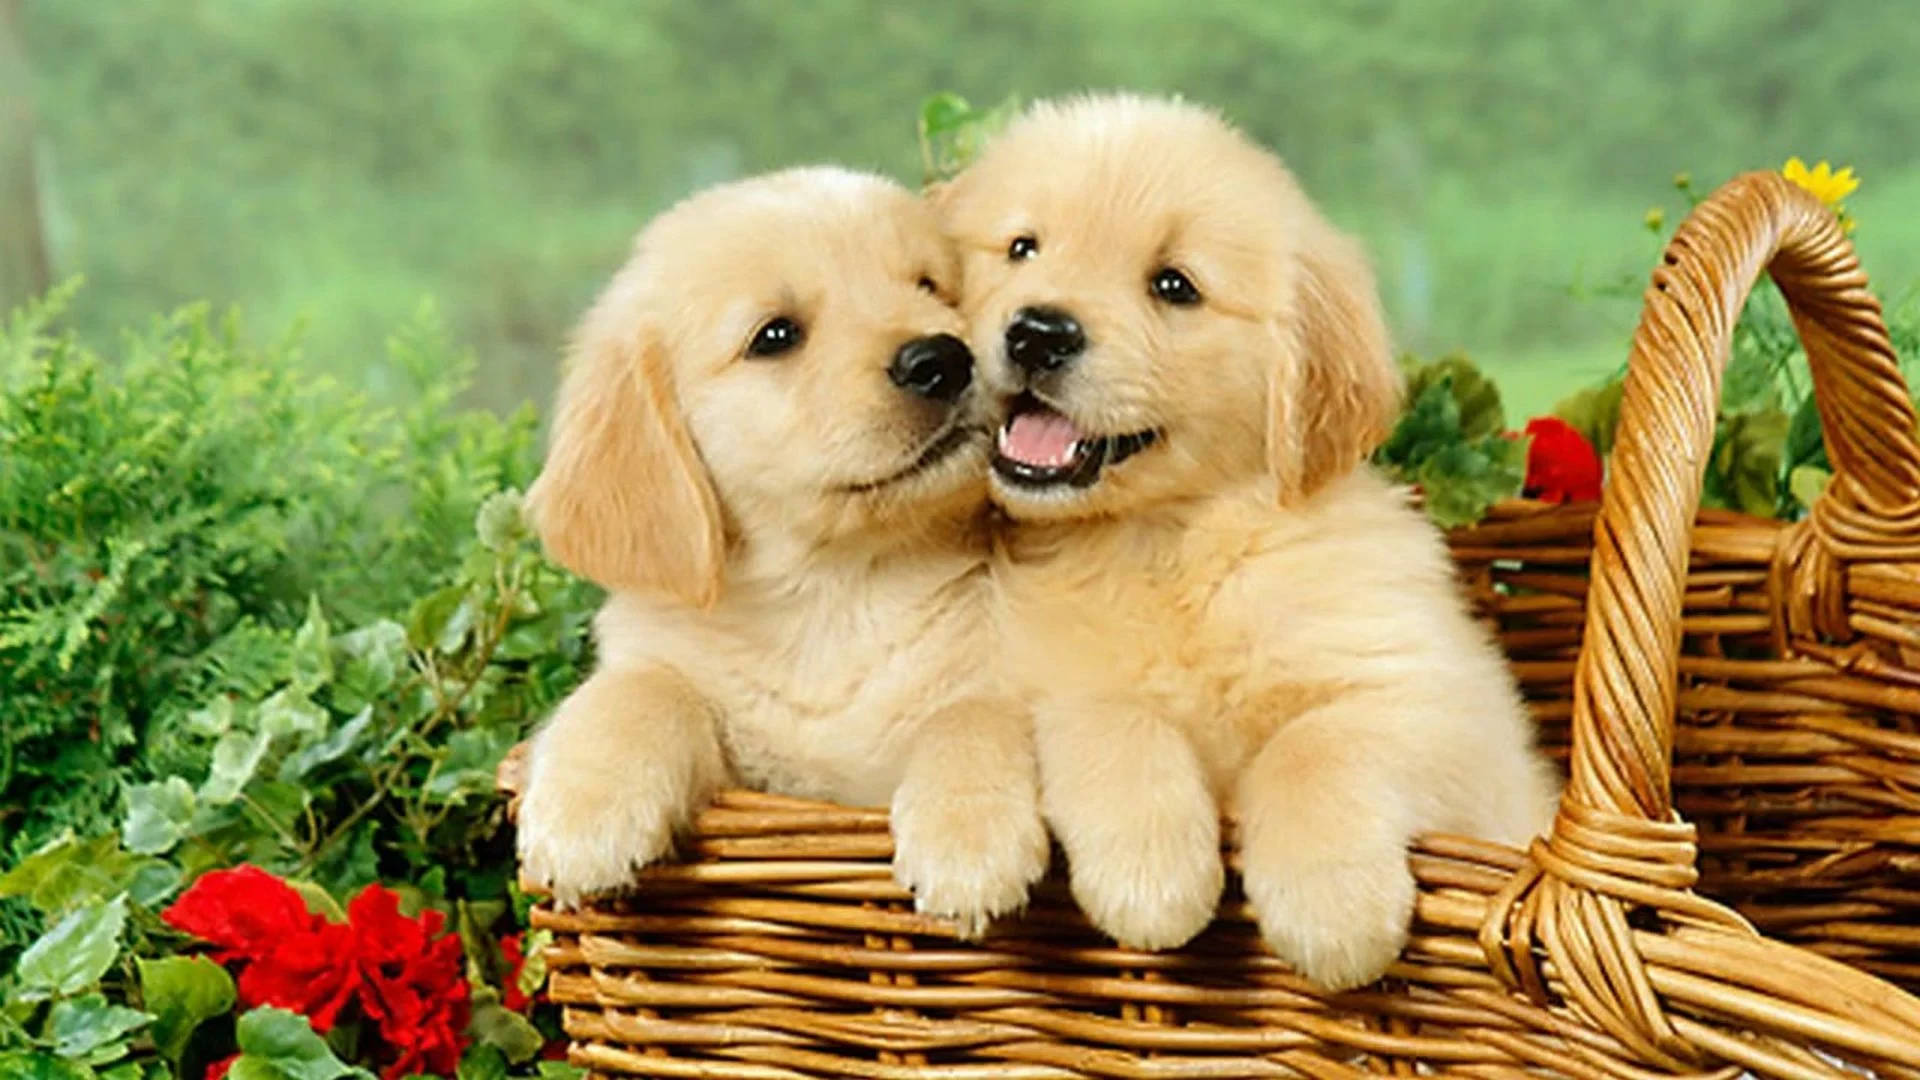 Charming Golden Retriever Puppy Desktop Wallpaper